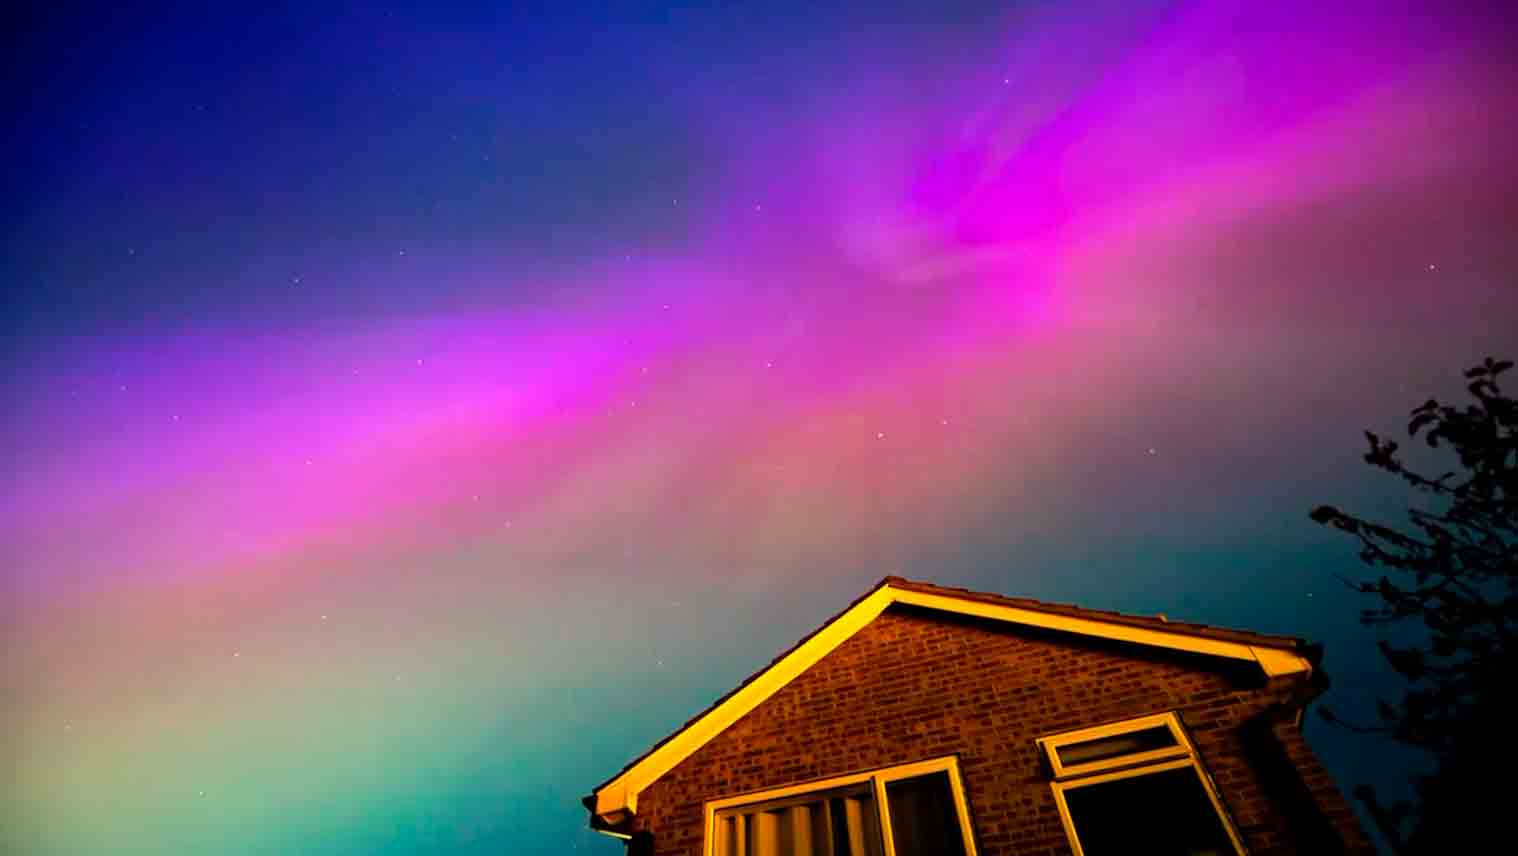 Video: La mayor tormenta solar en 20 años causa alerta y produce auroras boreales en gran parte del hemisferio norte. Foto: Reproducción Twitter @AdamKamacz